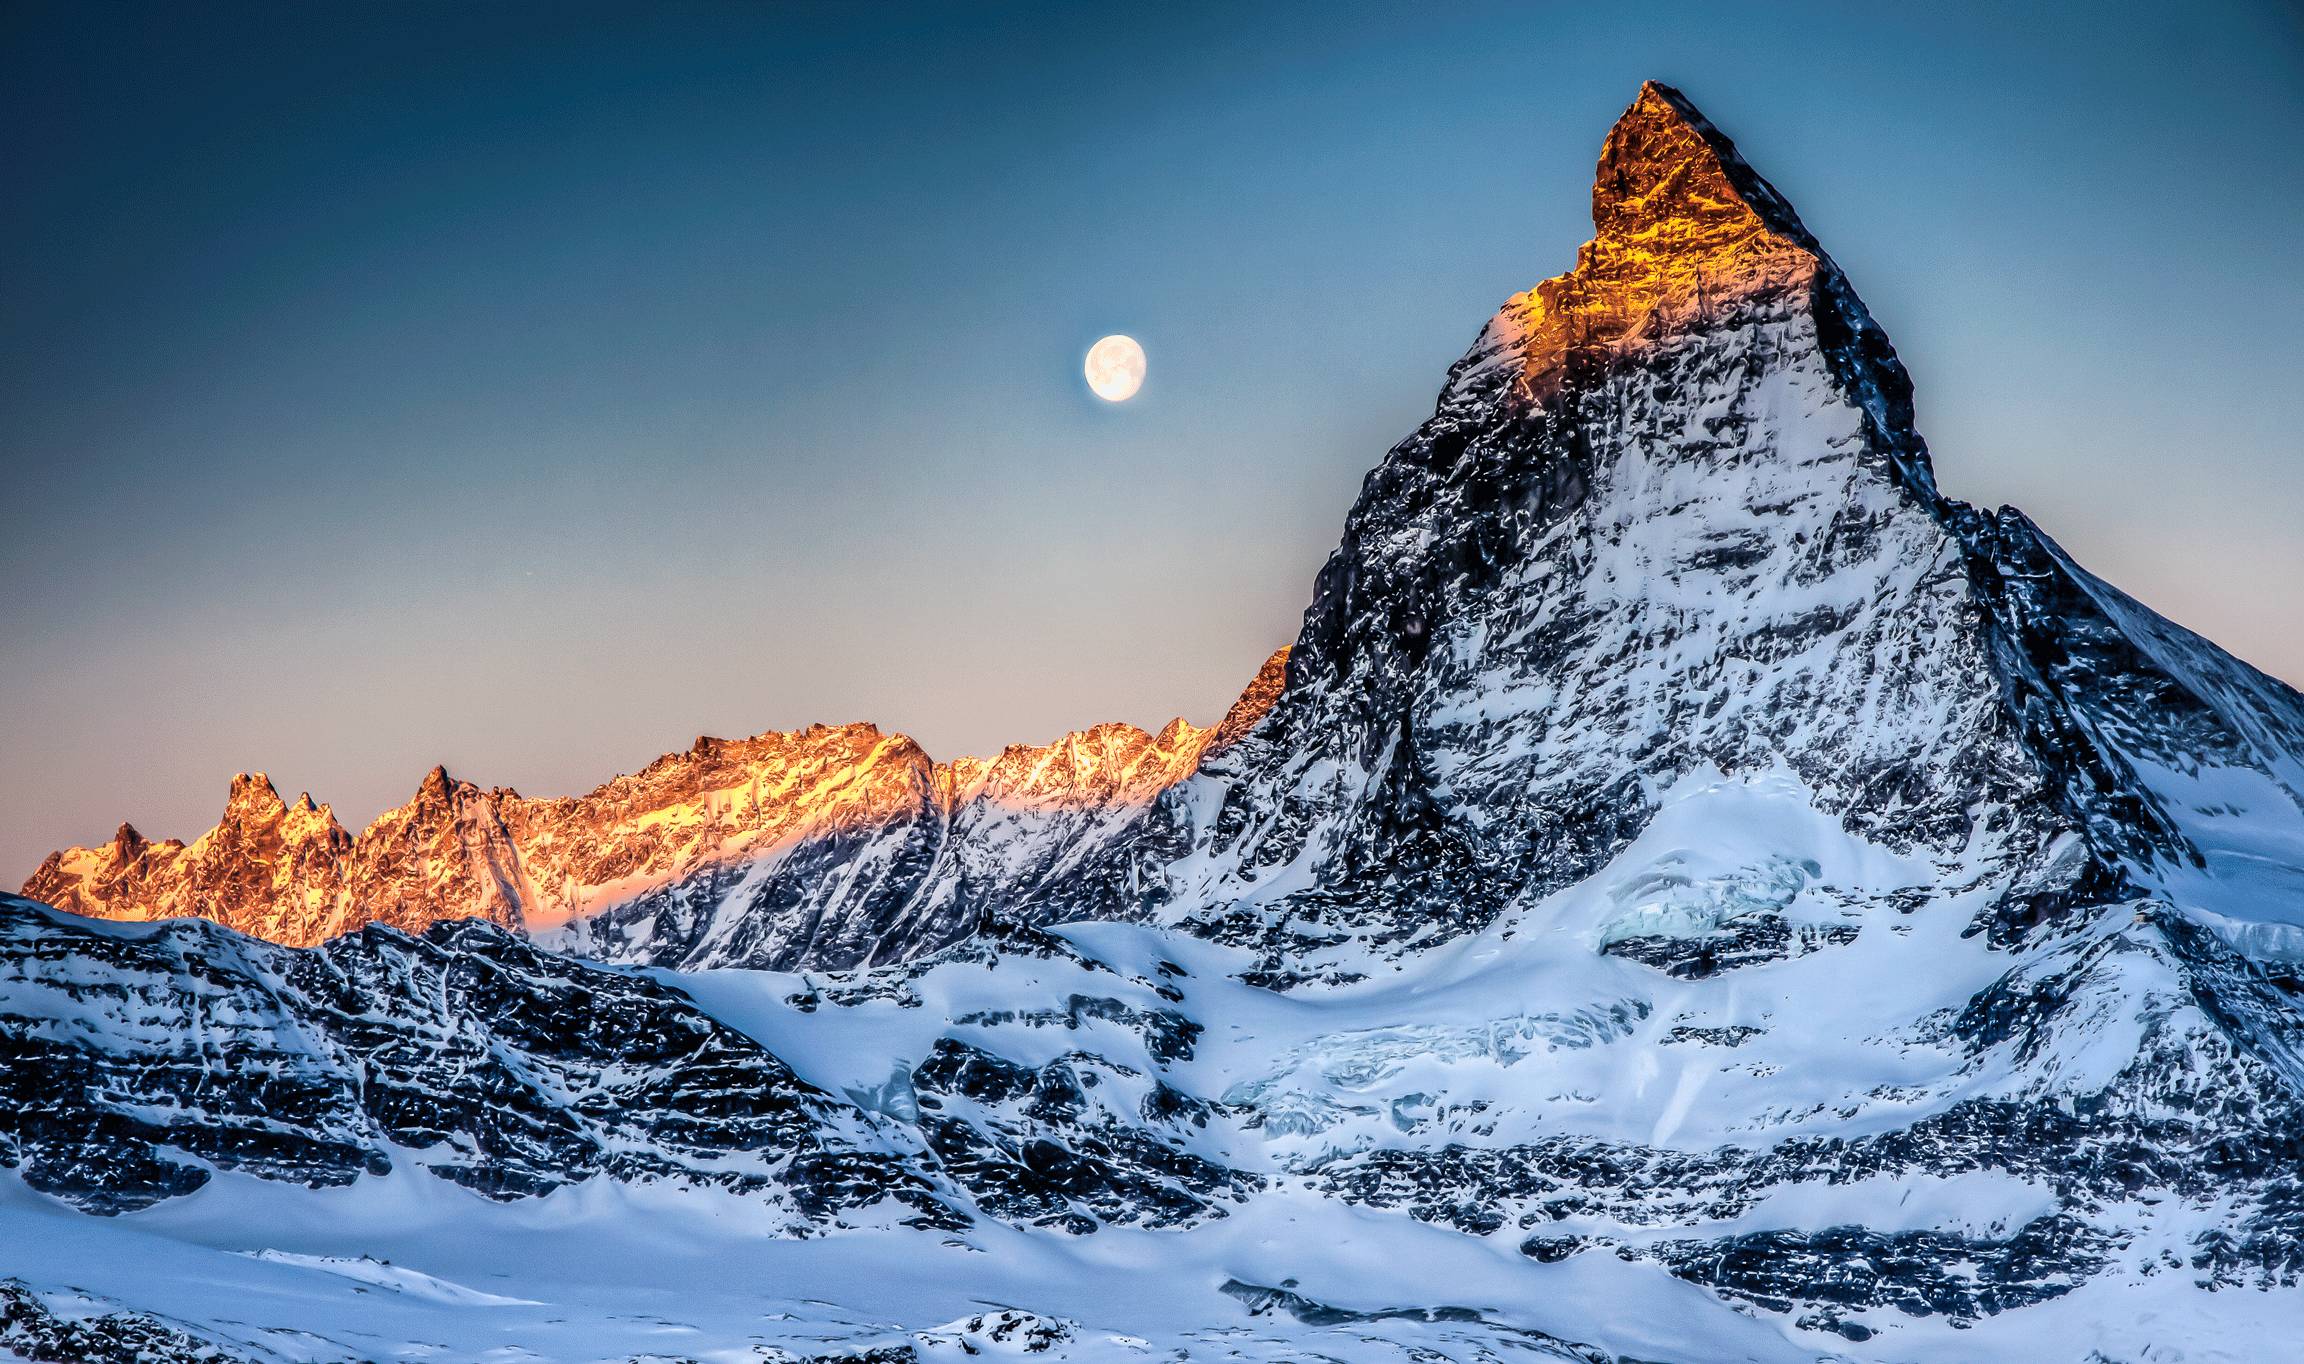 它是阿尔卑斯山下没有汽车的冰川之城,走进海拔1600米的白色仙境